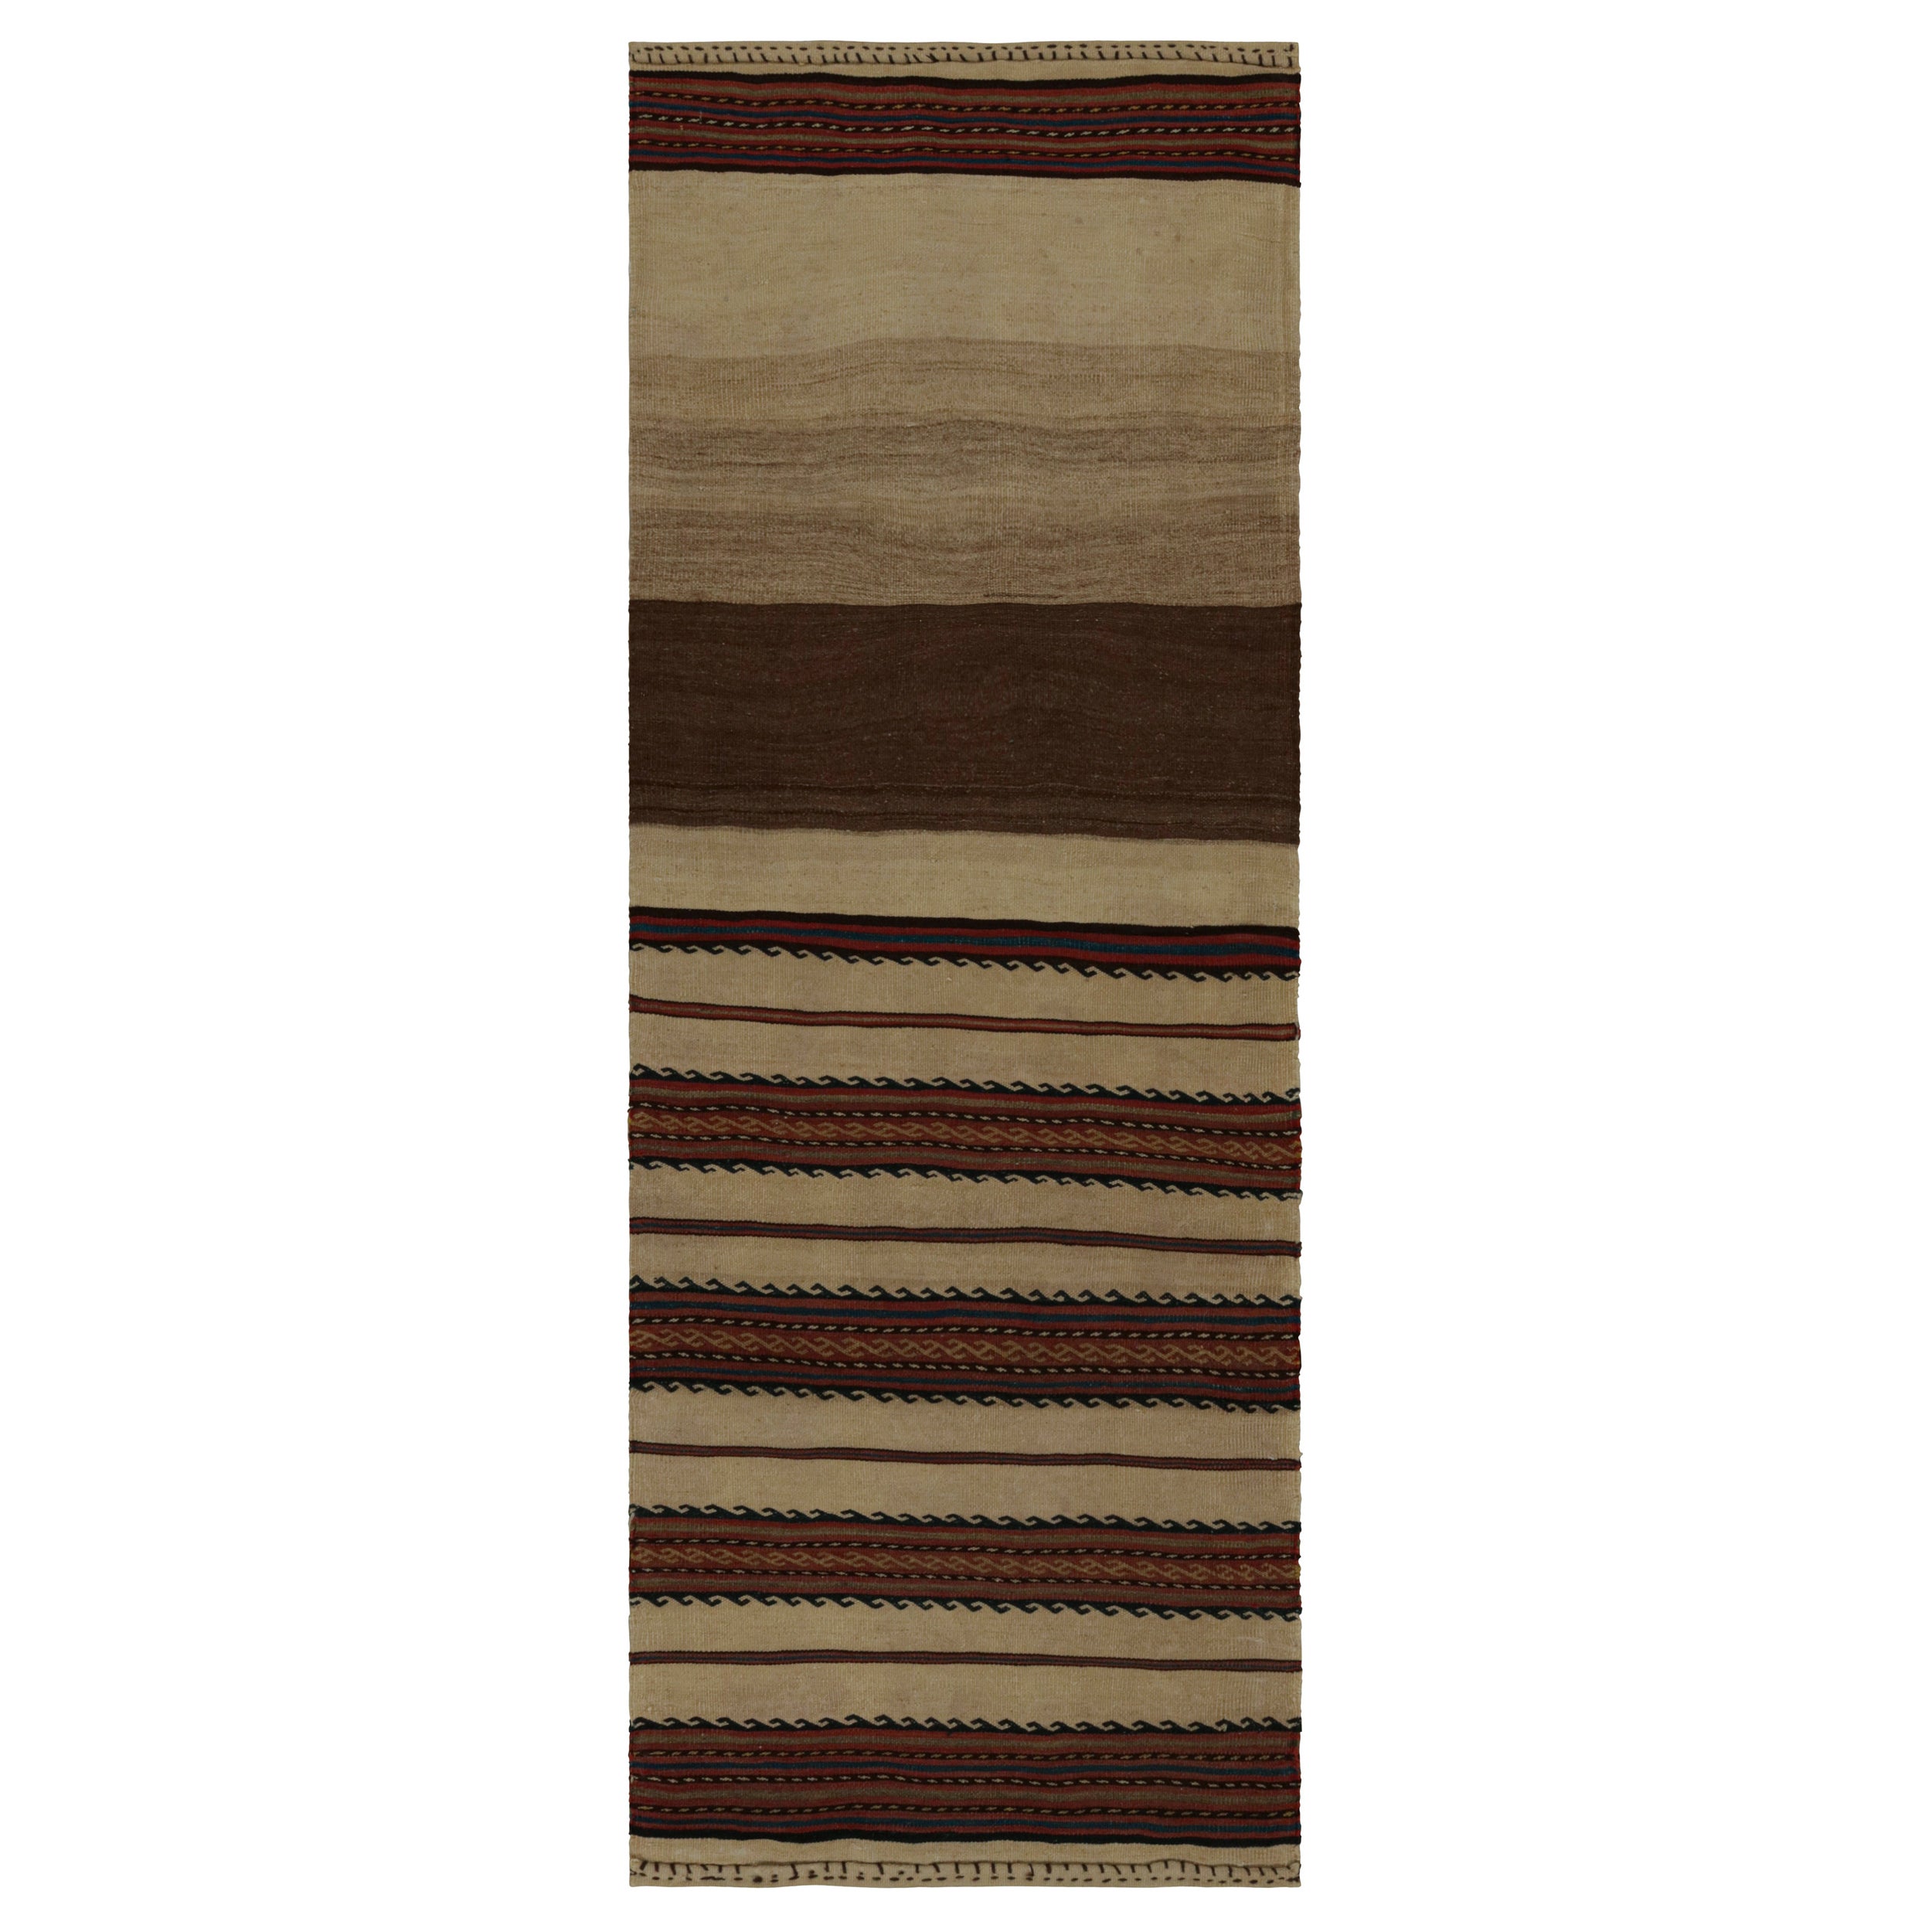 Vintage Afghani tribal Kilim runner rug, in Beige/brown, from Rug & Kilim For Sale